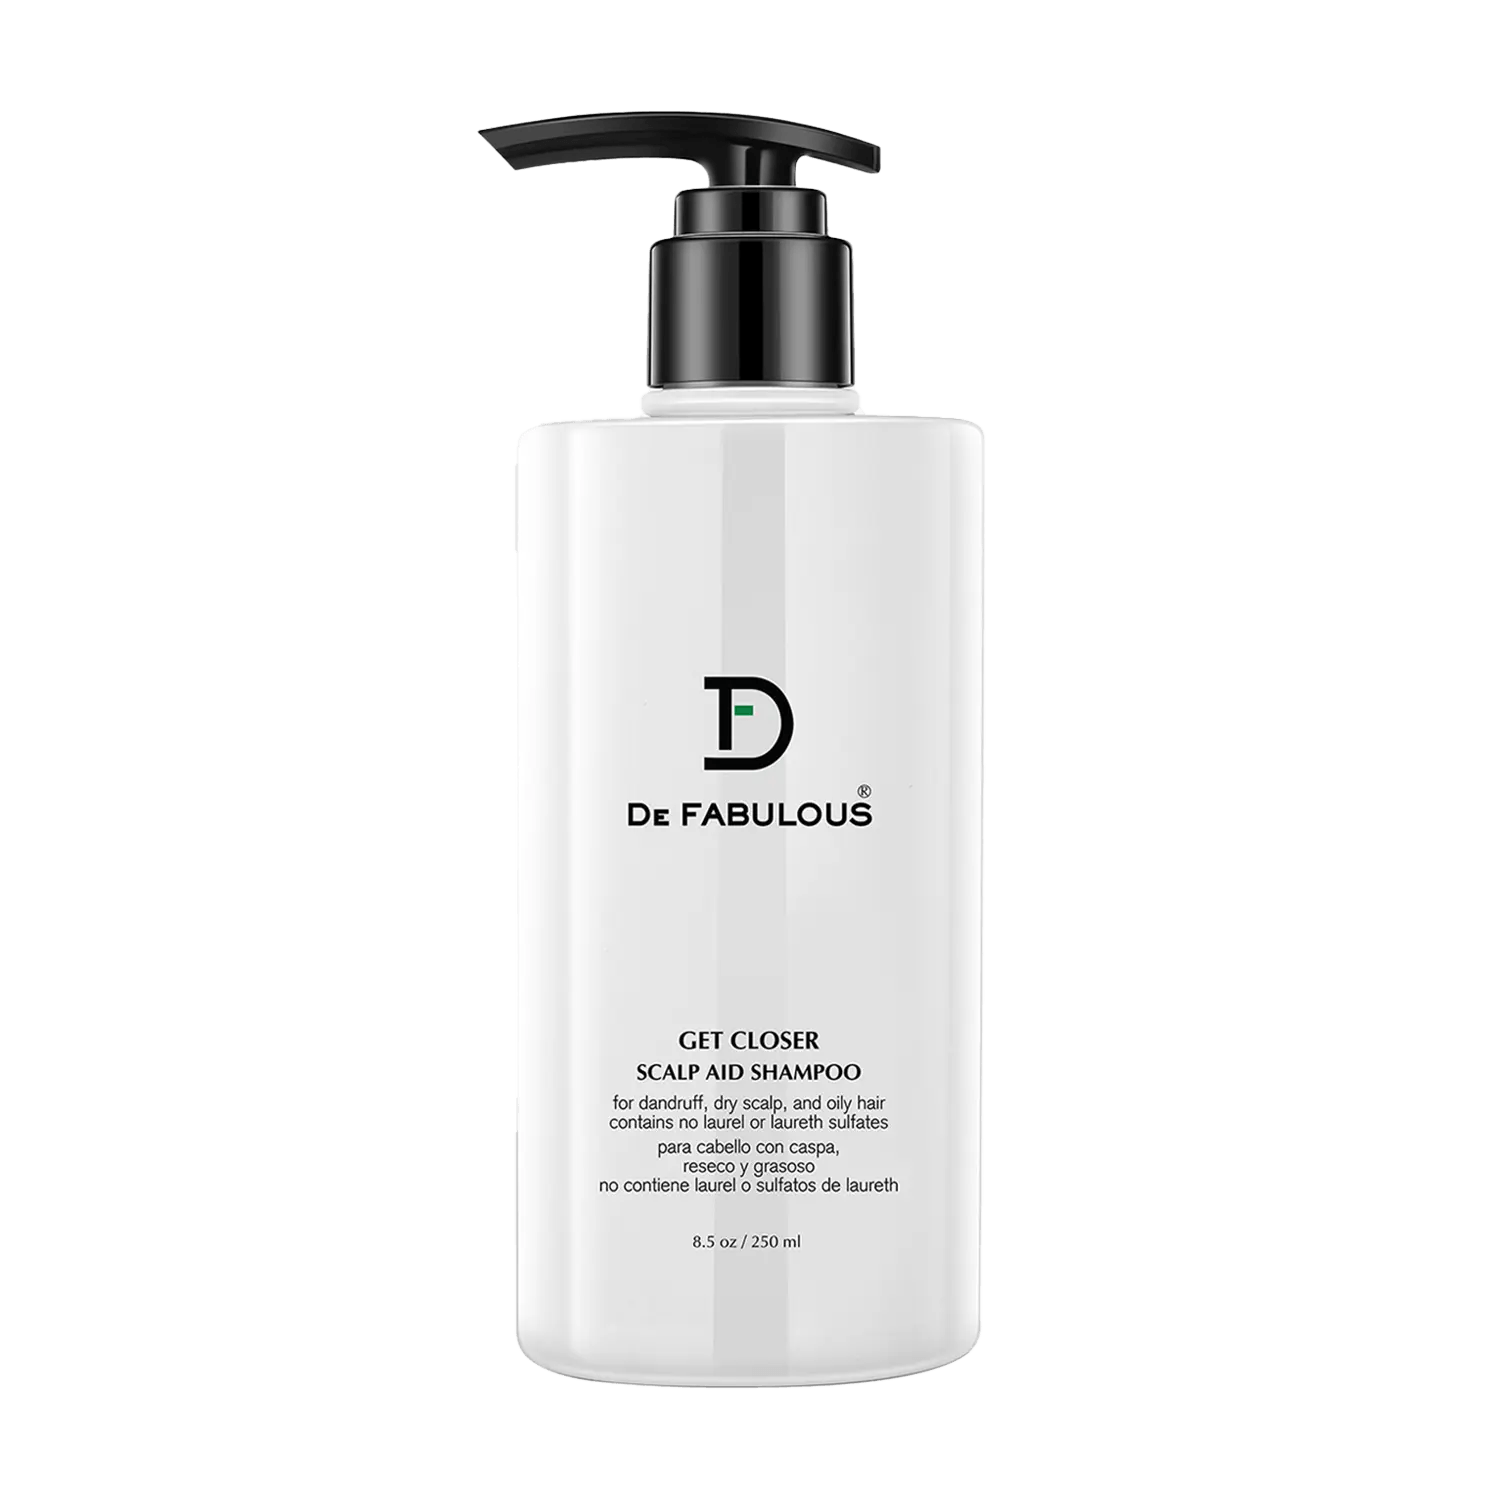 De Fabulous | De Fabulous Get Closer Scalp Aid Shampoo (250ml)